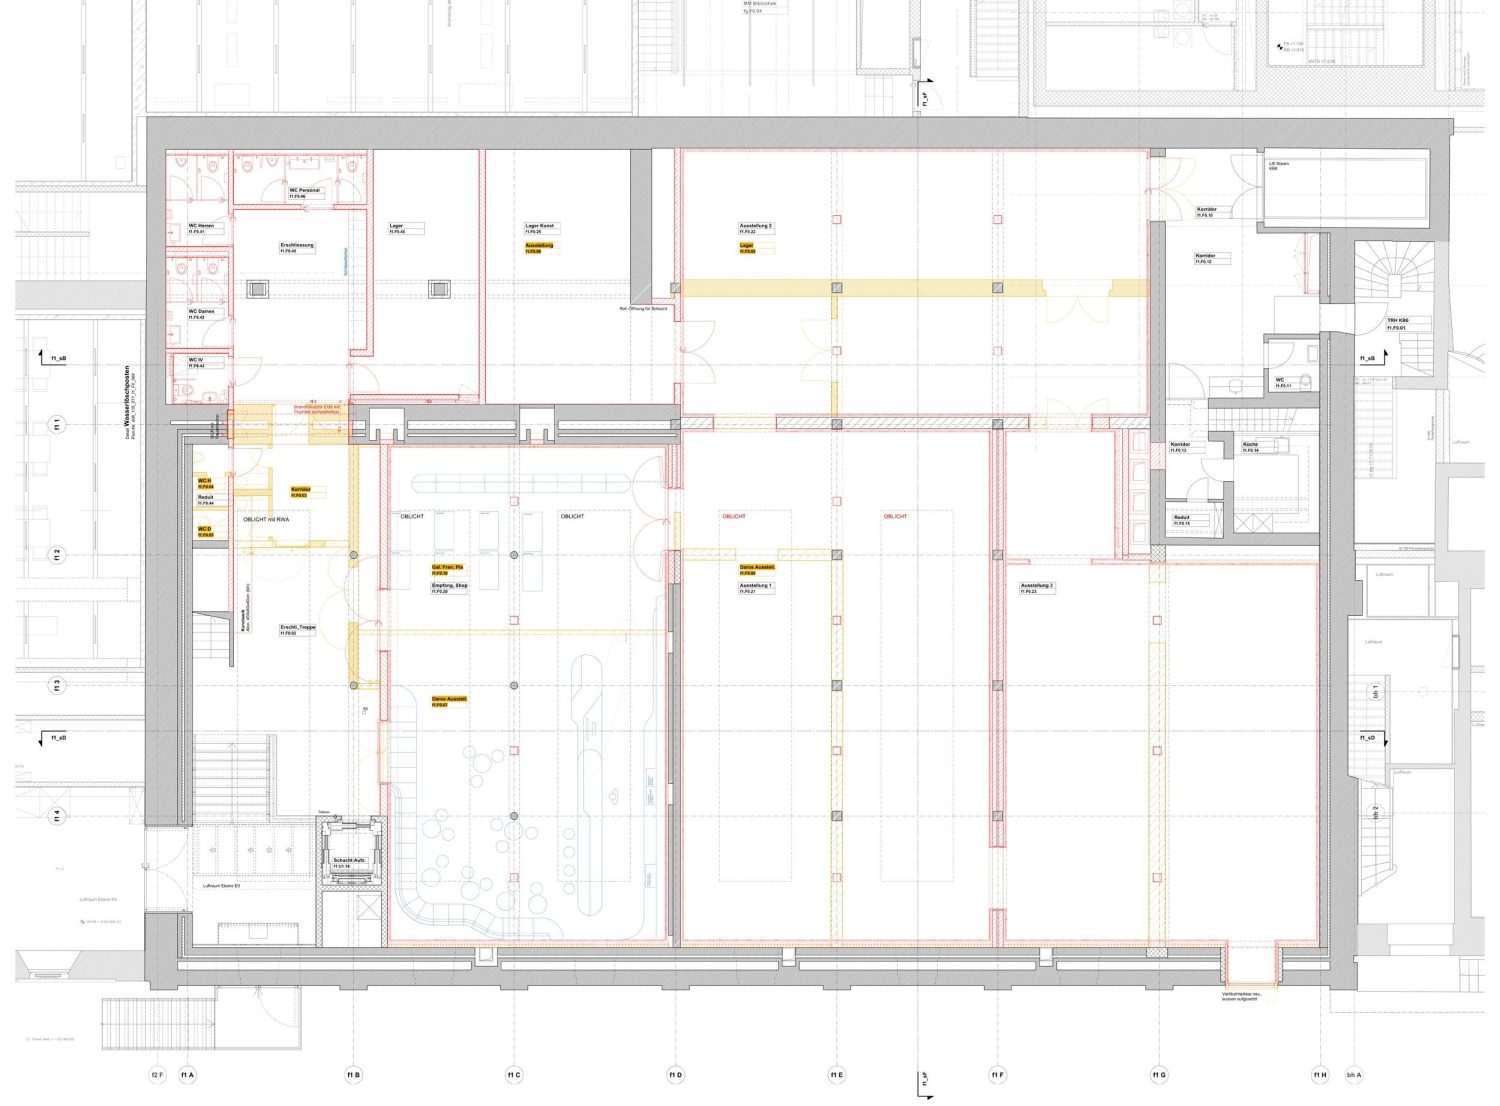 Floor plan of the exhibition floor